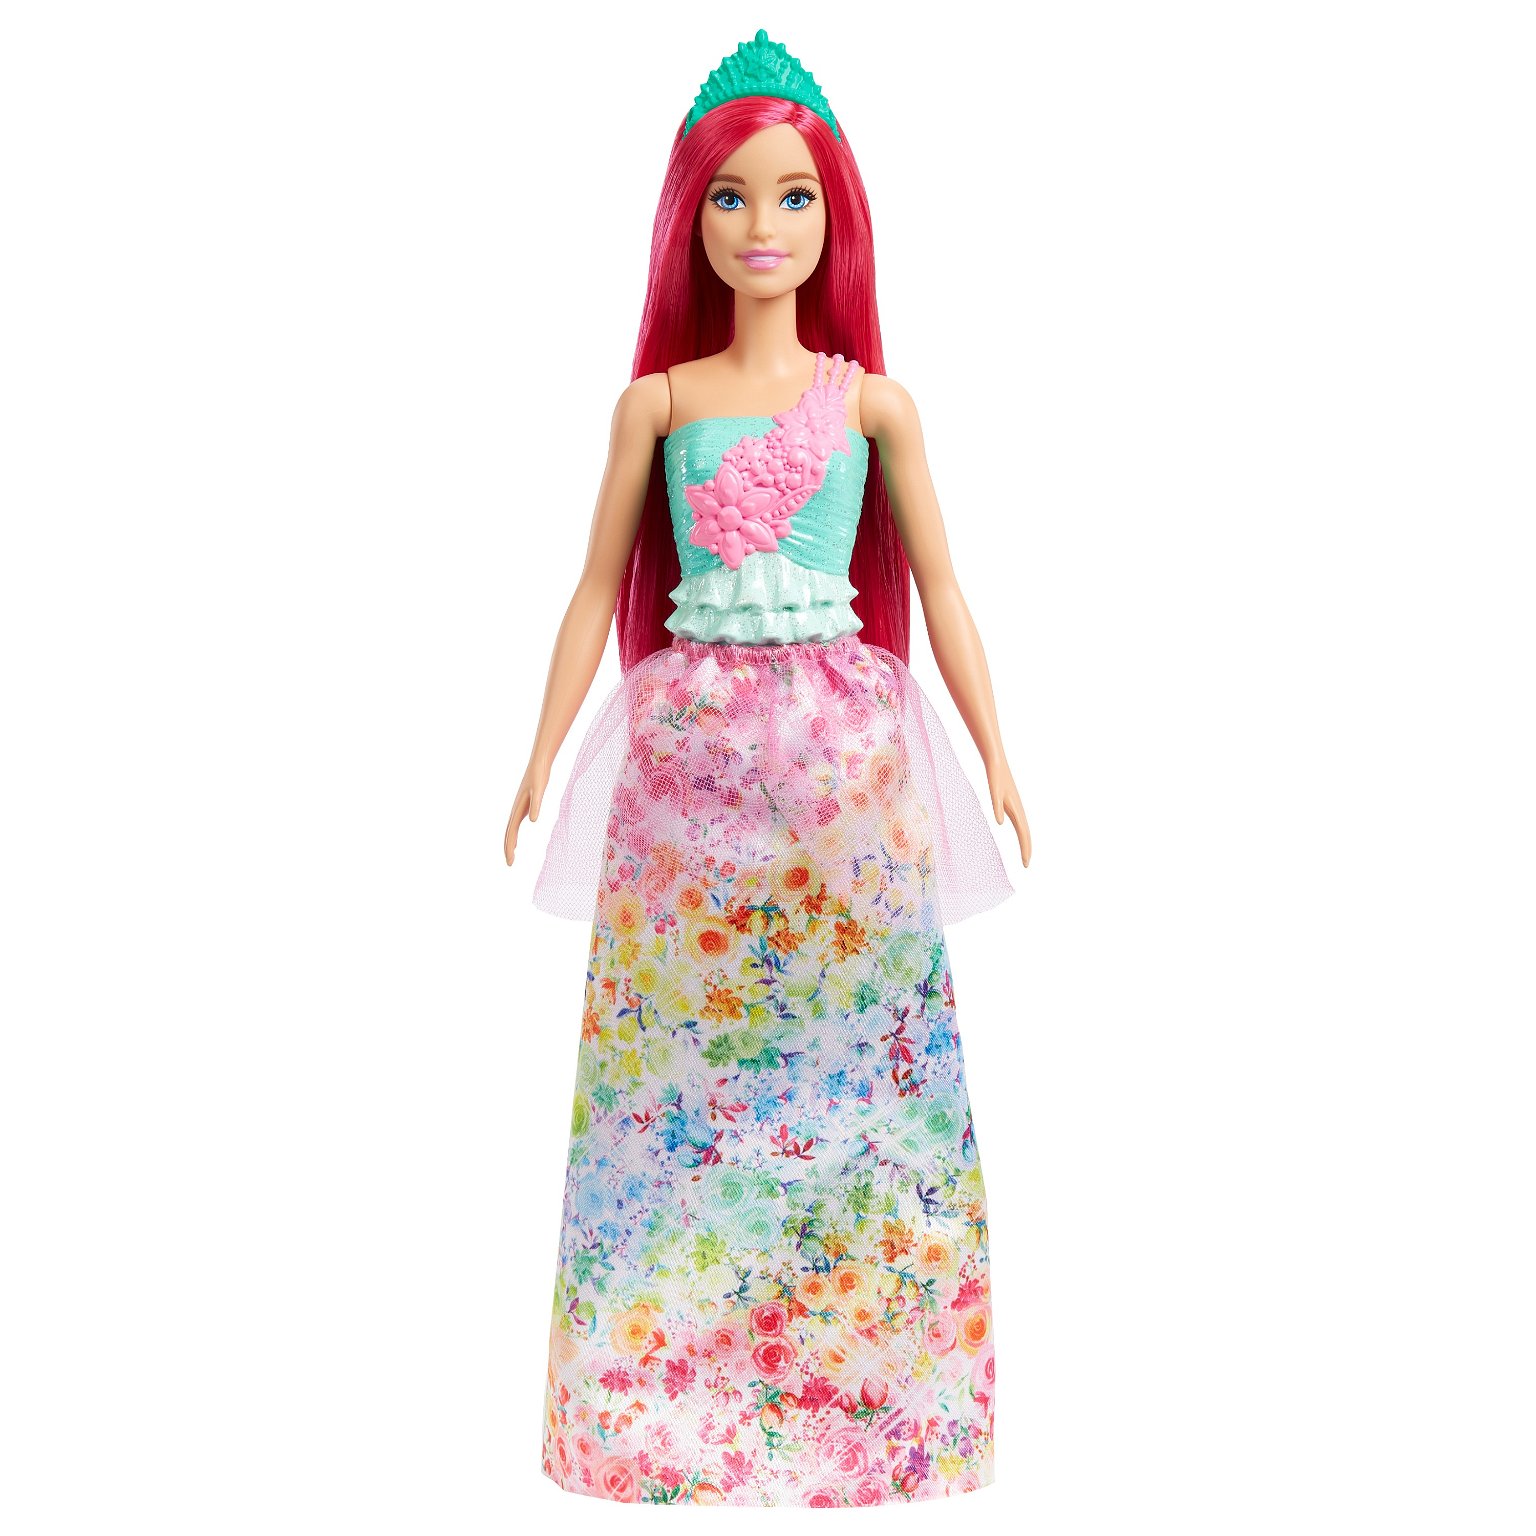 Lėlė Barbie Dreamtopia“ princesė ryškiais plaukais